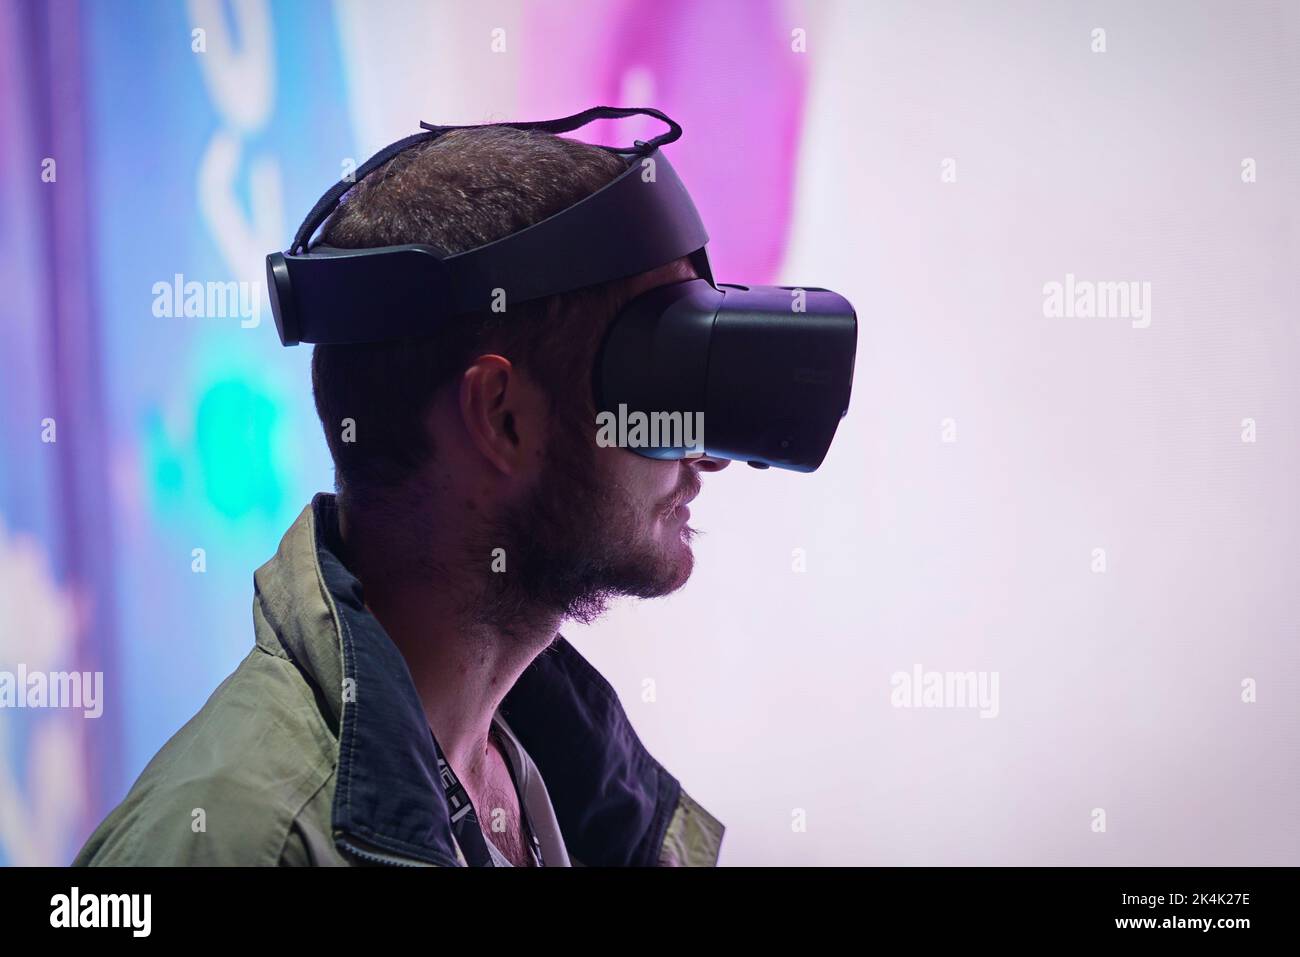 Mostra di realtà virtuale. Il giovane indossa occhiali per la realtà virtuale e sperimenta un incontro metaverso. Torino, Italia - Settembre 2022 Foto Stock